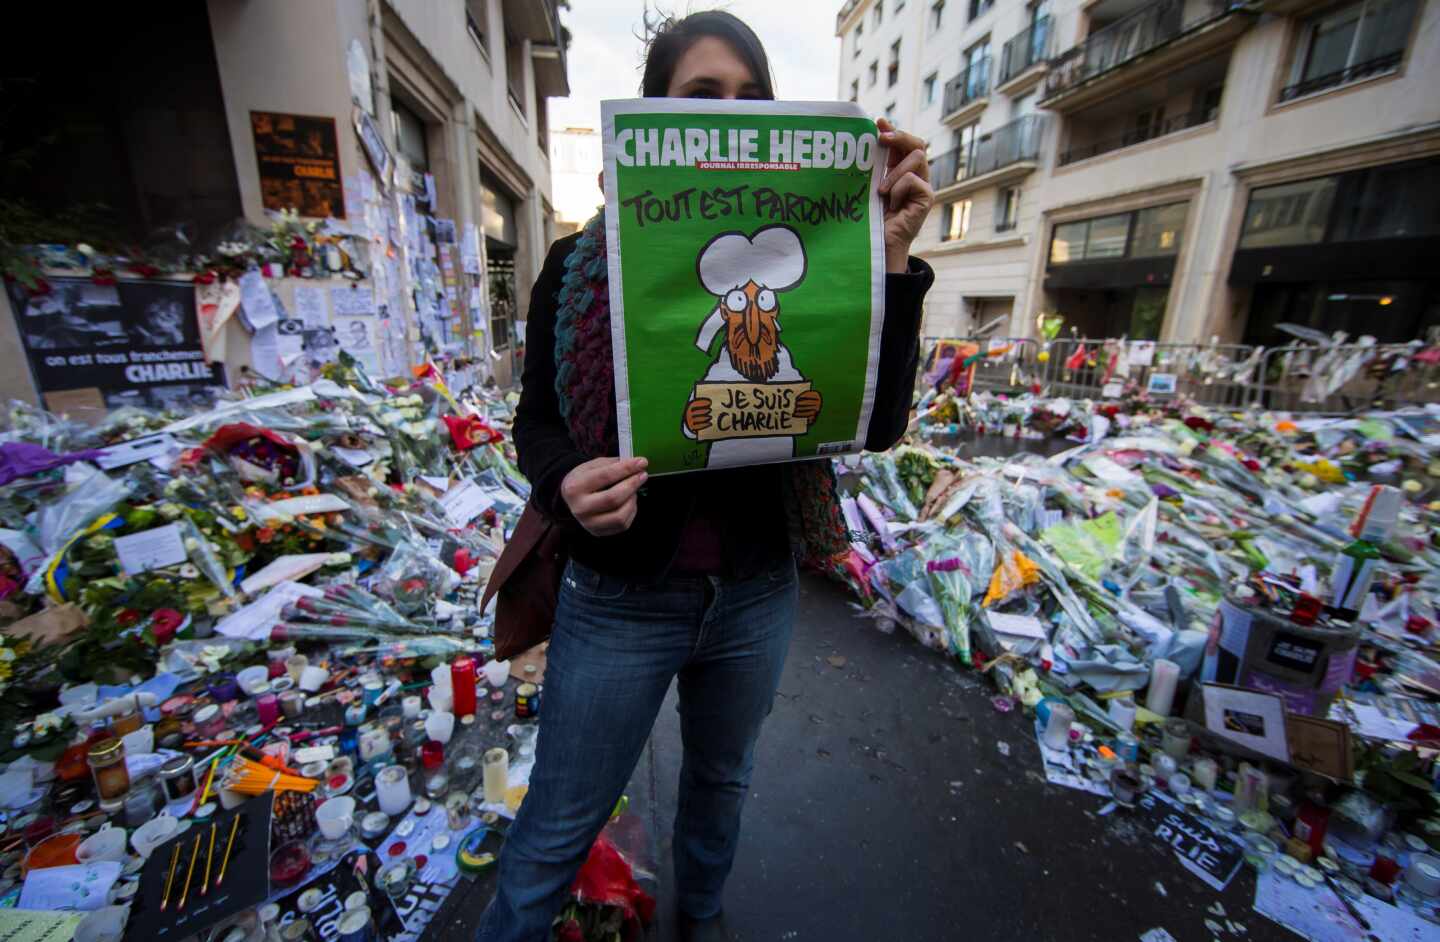 Charlie Hebdo condenas